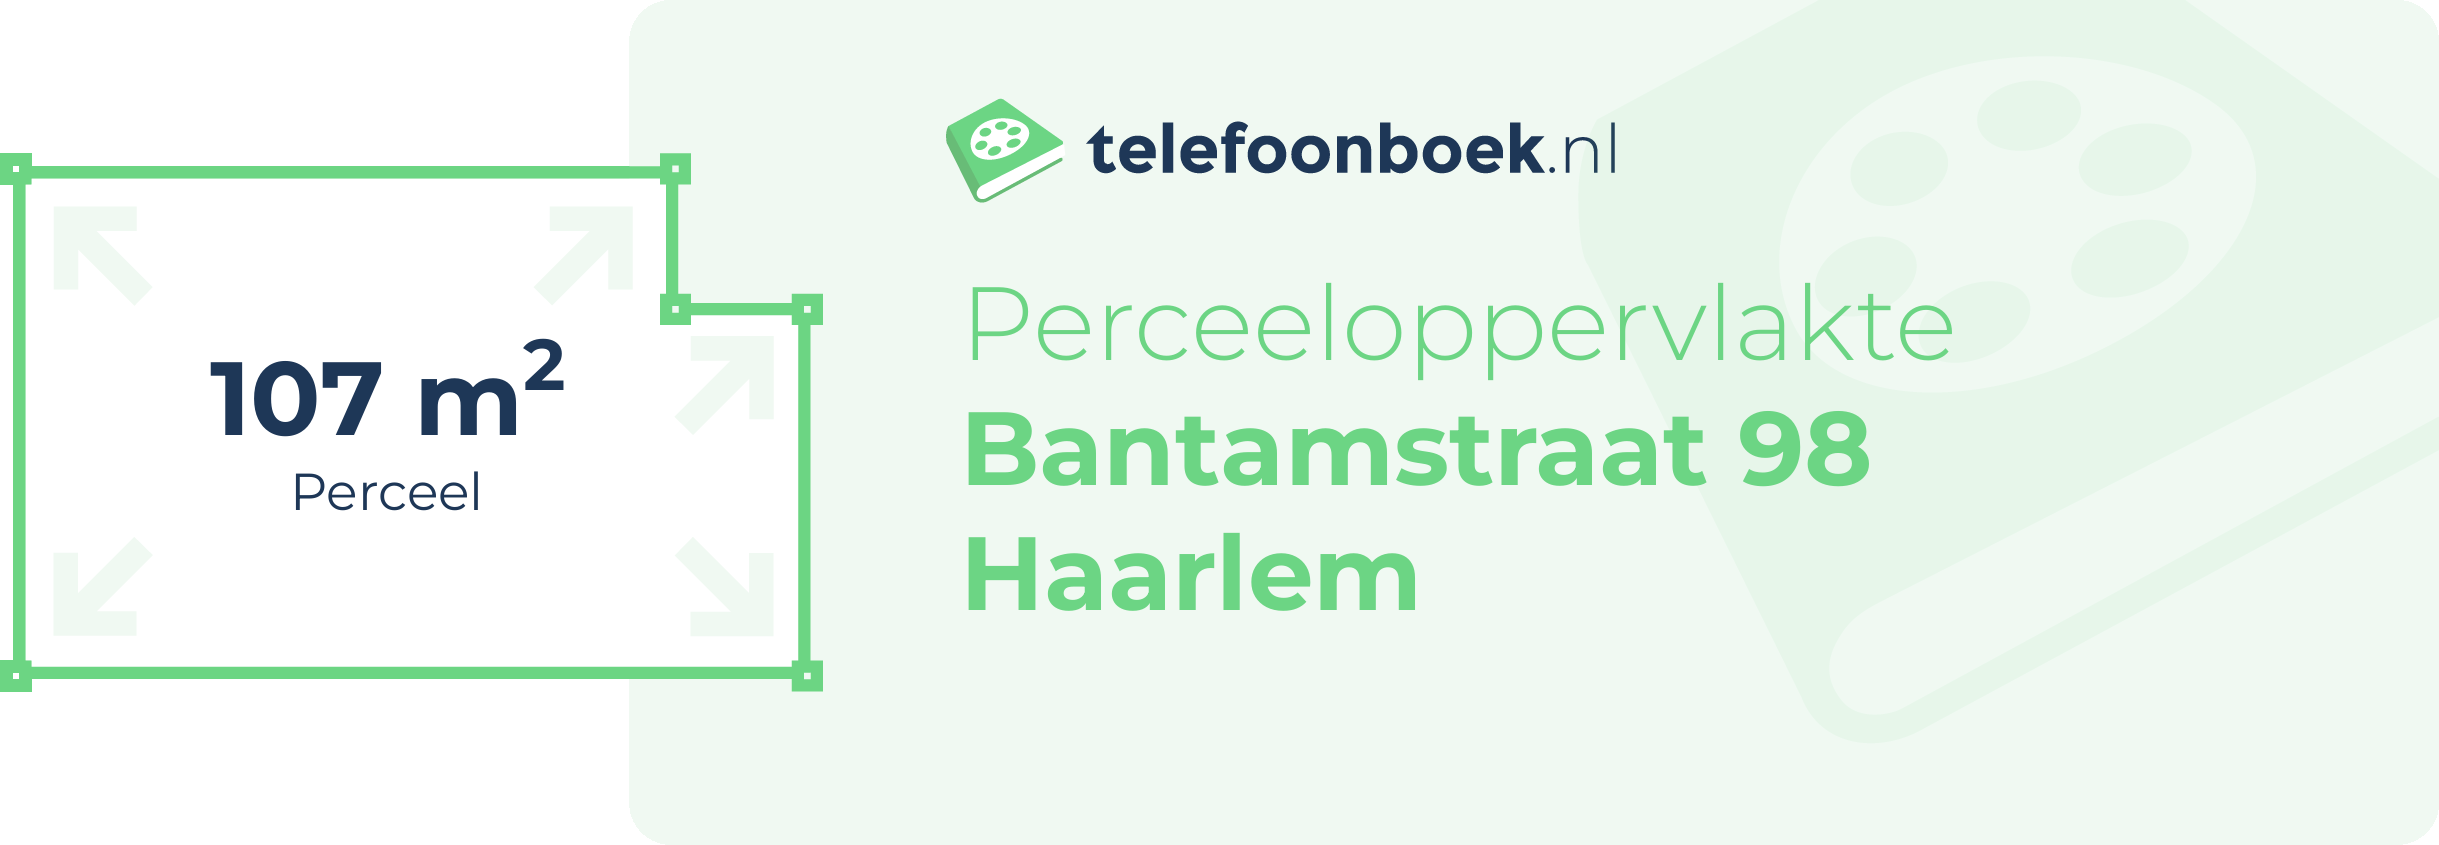 Perceeloppervlakte Bantamstraat 98 Haarlem